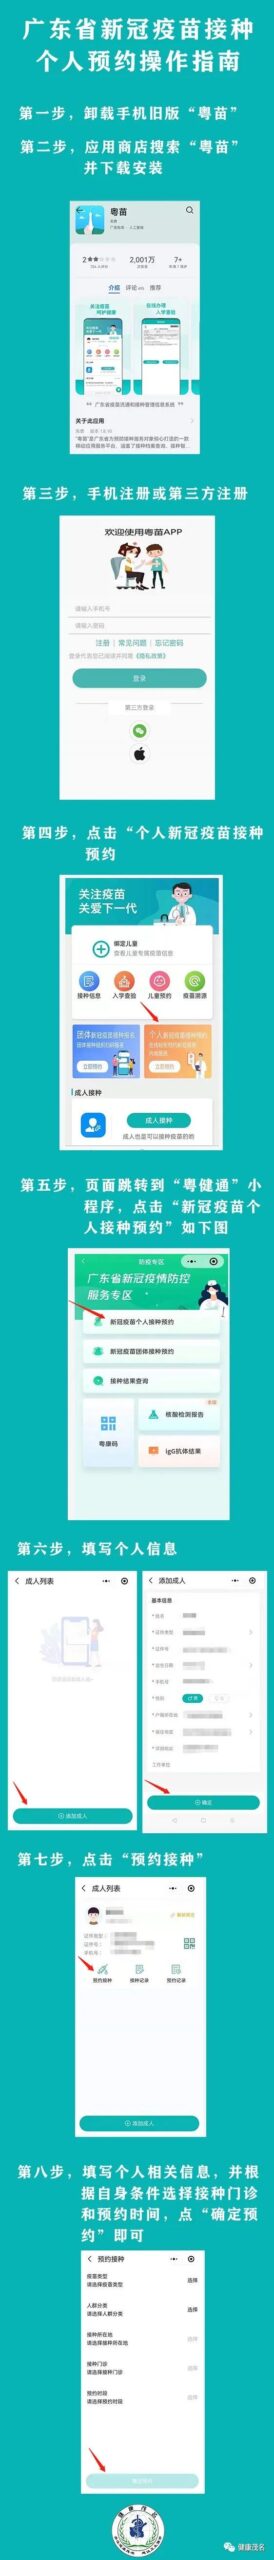 广东省粤健通小程序最新使用教程 - 化州信息网